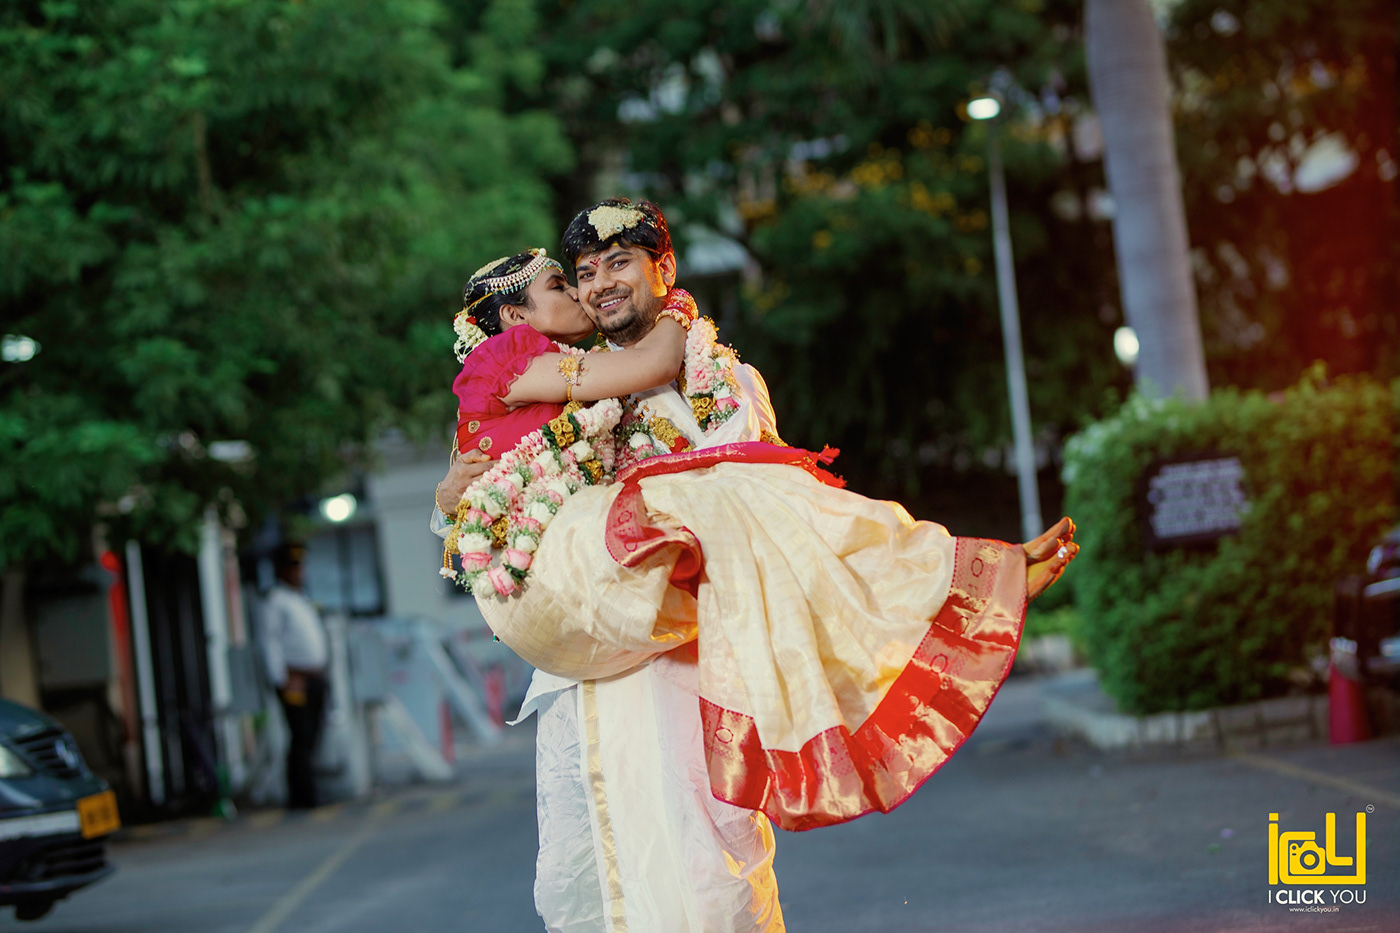 Candid Photography cinematic cinematography couple indian wedding wedding Wedding Photography weddingideas Weddings